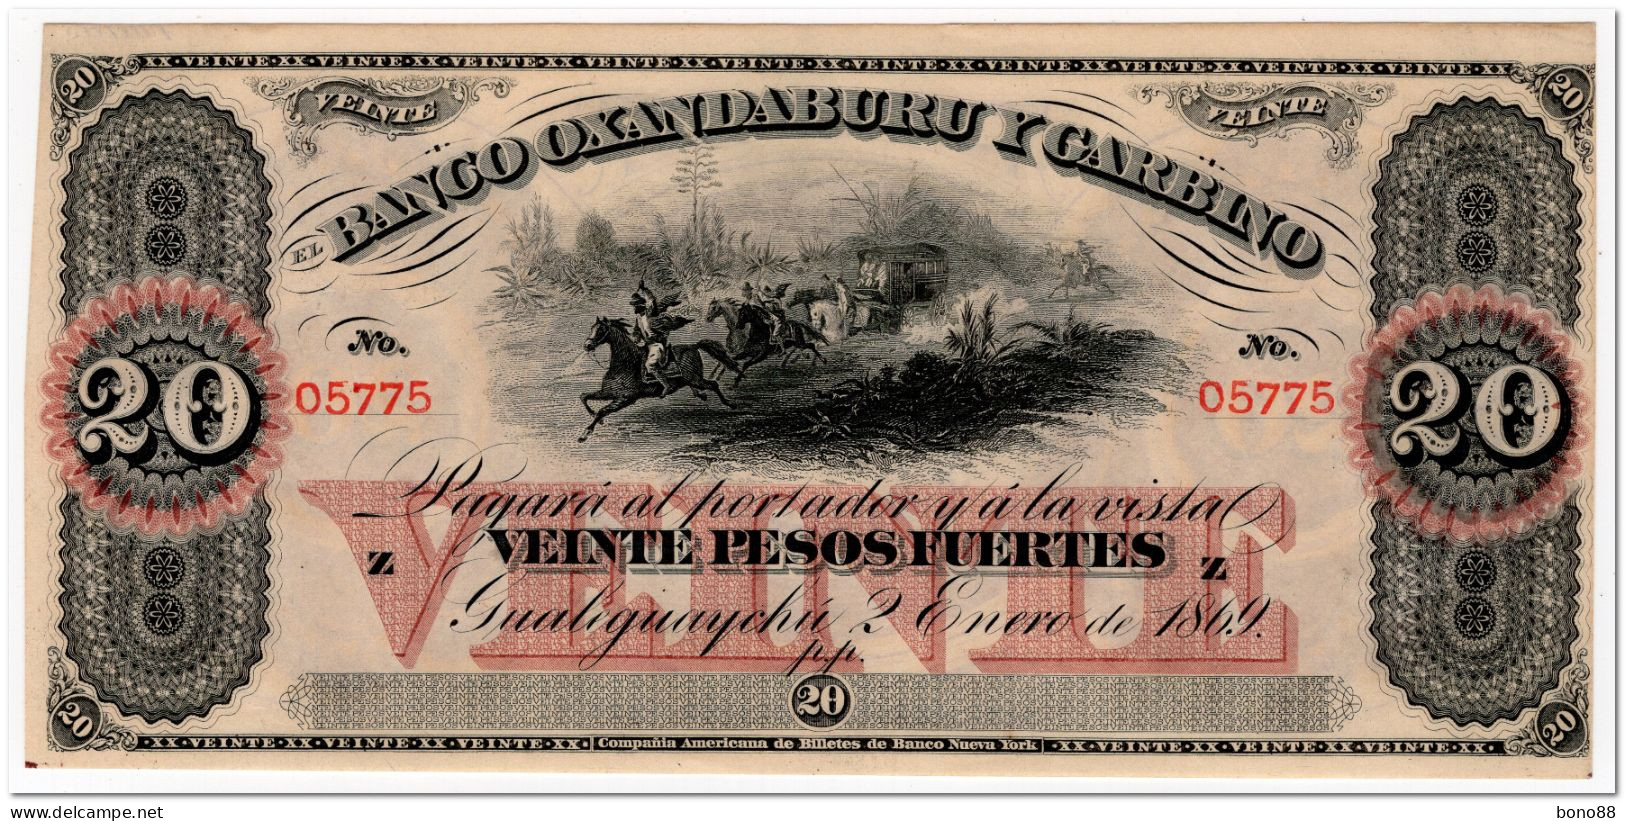 ARGENTINA,BANCO OXANDABURU Y GARBINO,20 PESOS FUERTES,1869,P.S1794,AU-UNC - Argentina